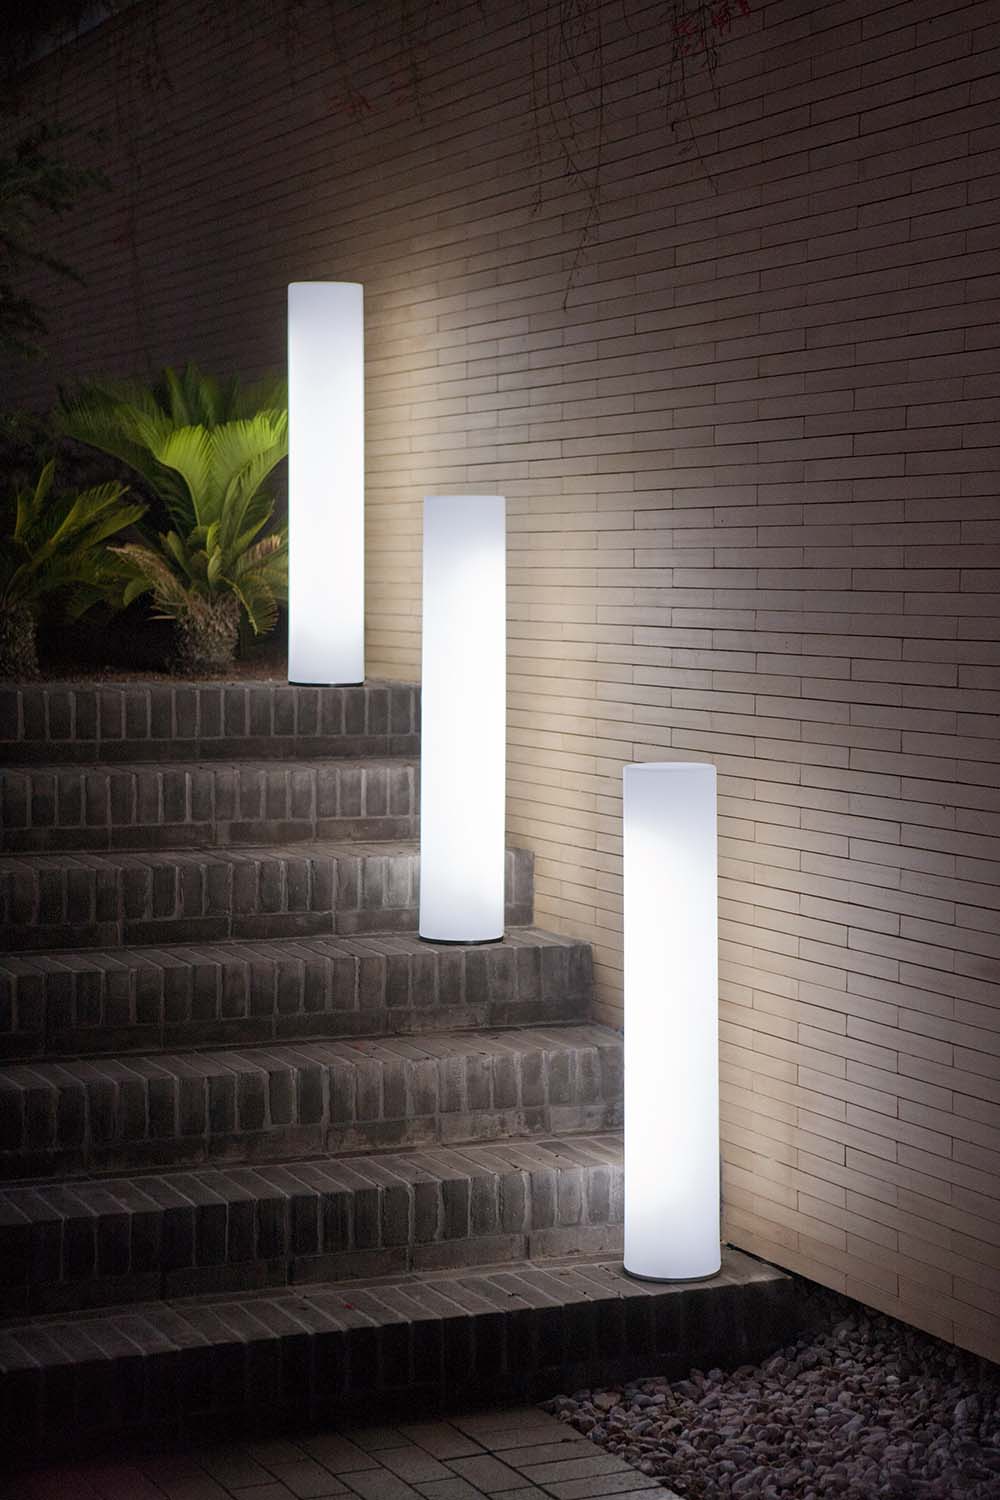 Luminaire extérieur : sélection d'éclairages pour illuminer son jardin   Luminaire exterieur mural, Luminaire exterieur, Eclairage exterieur terrasse